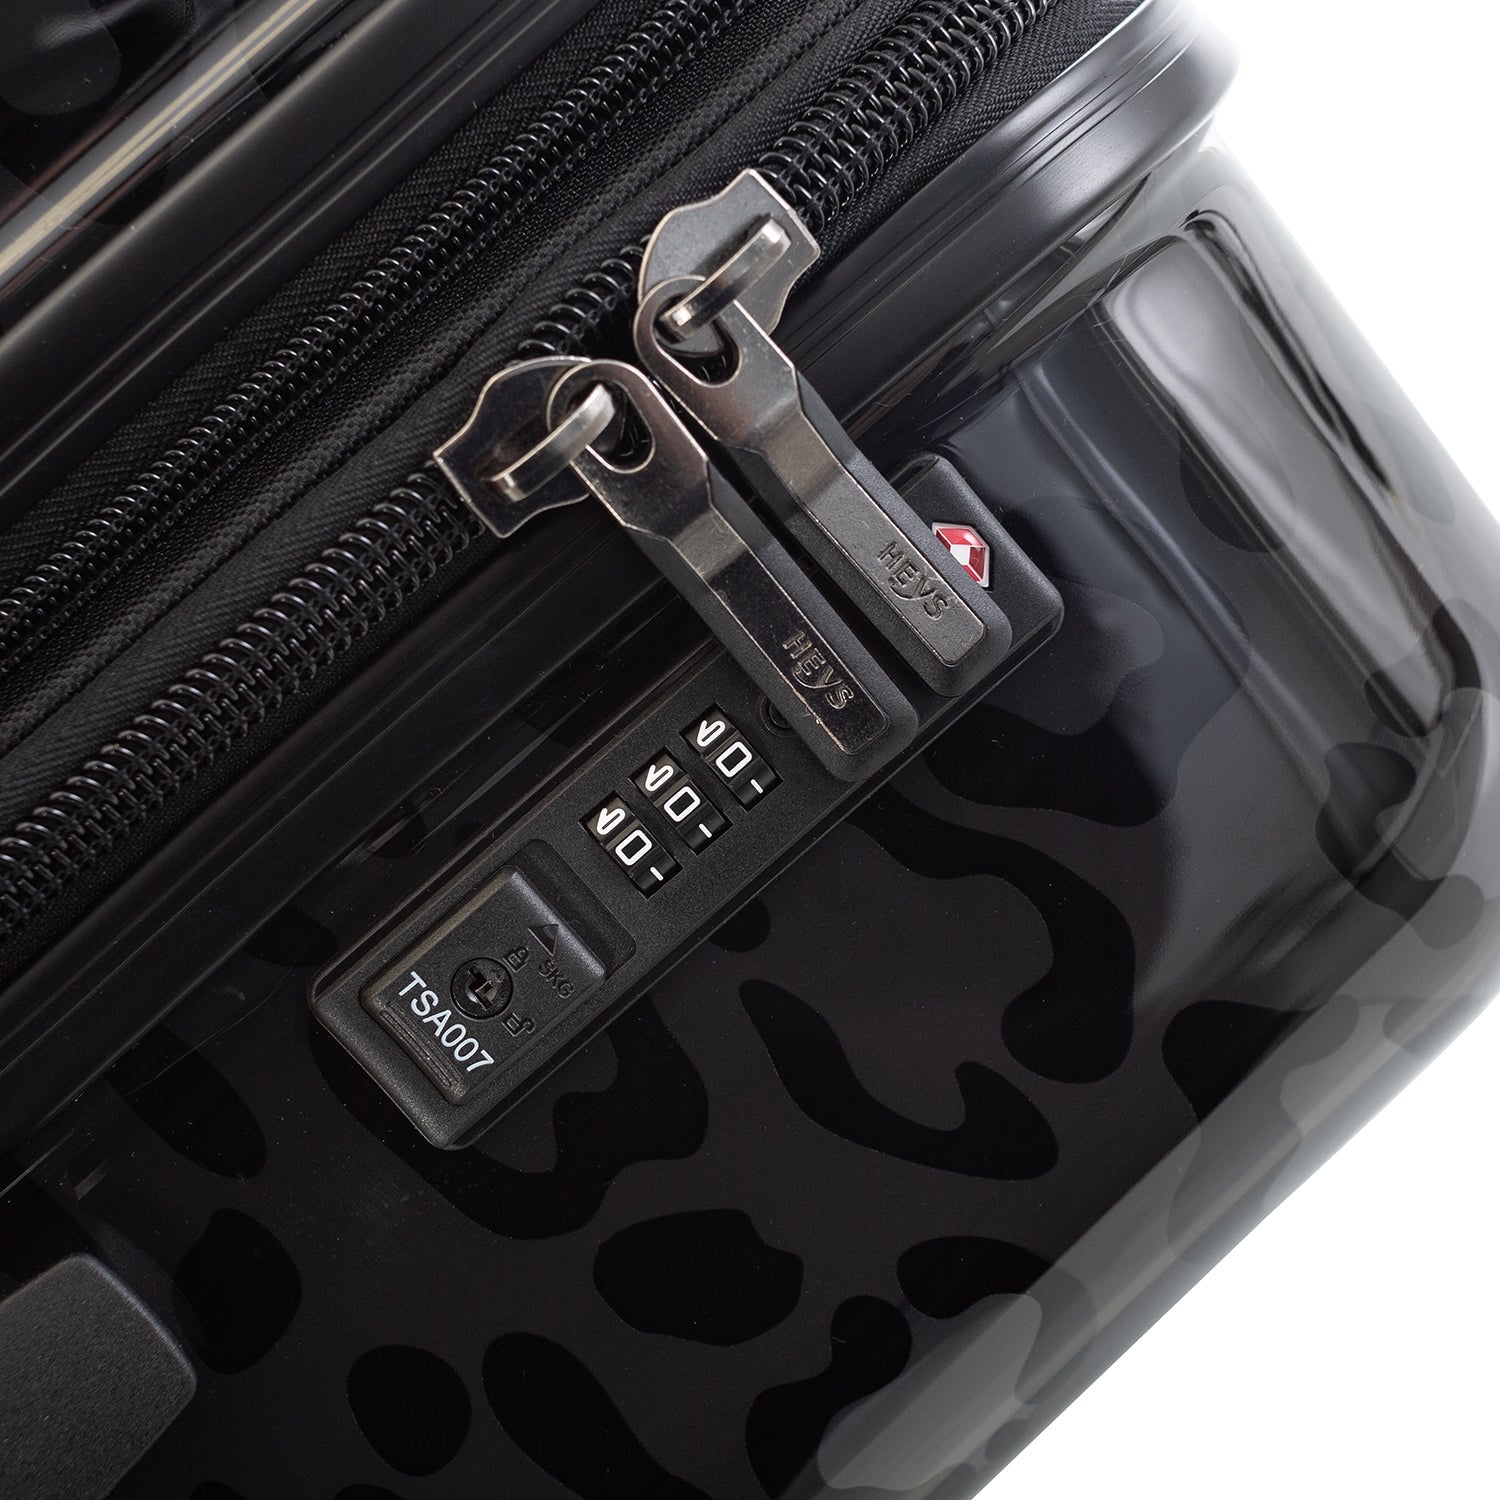 Black Leopard Fashion Spinner® 30" Luggage